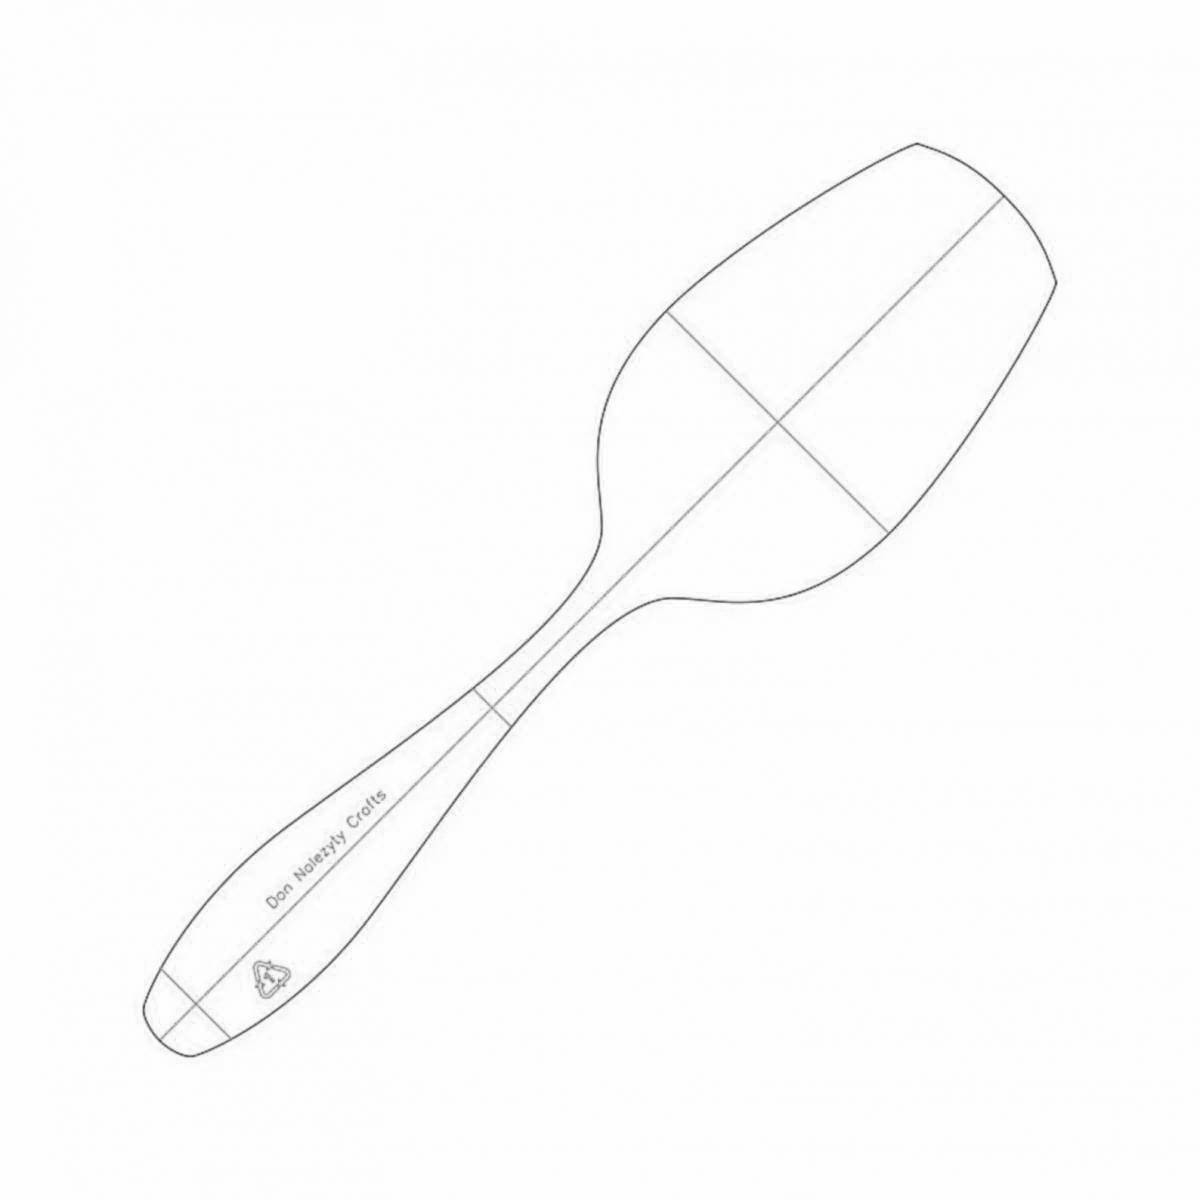 Children's wooden spoon #8